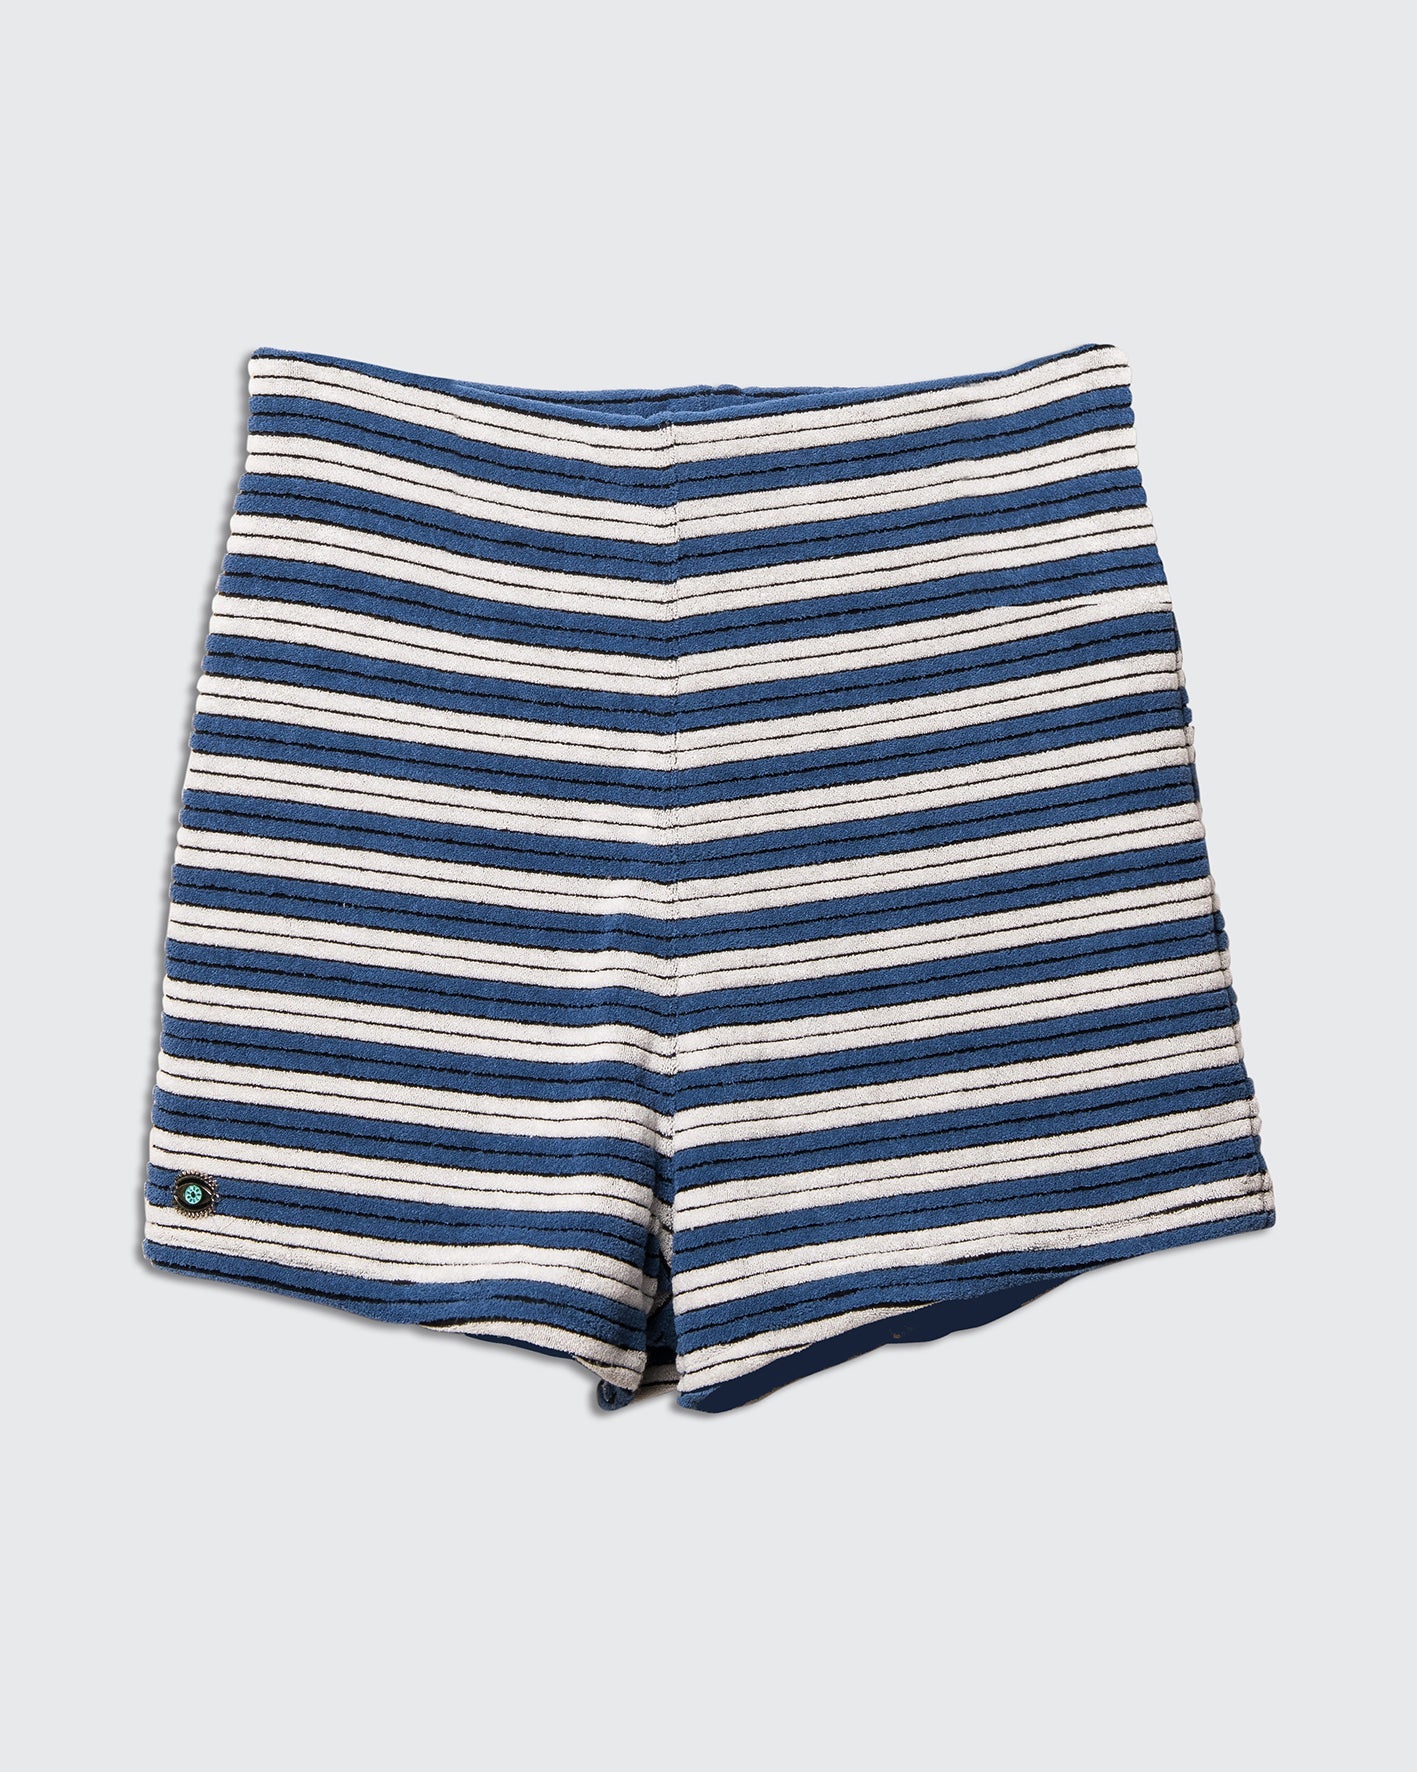 Daniel Shorts Blue White - BIKINI -BiliBlond Swimwear